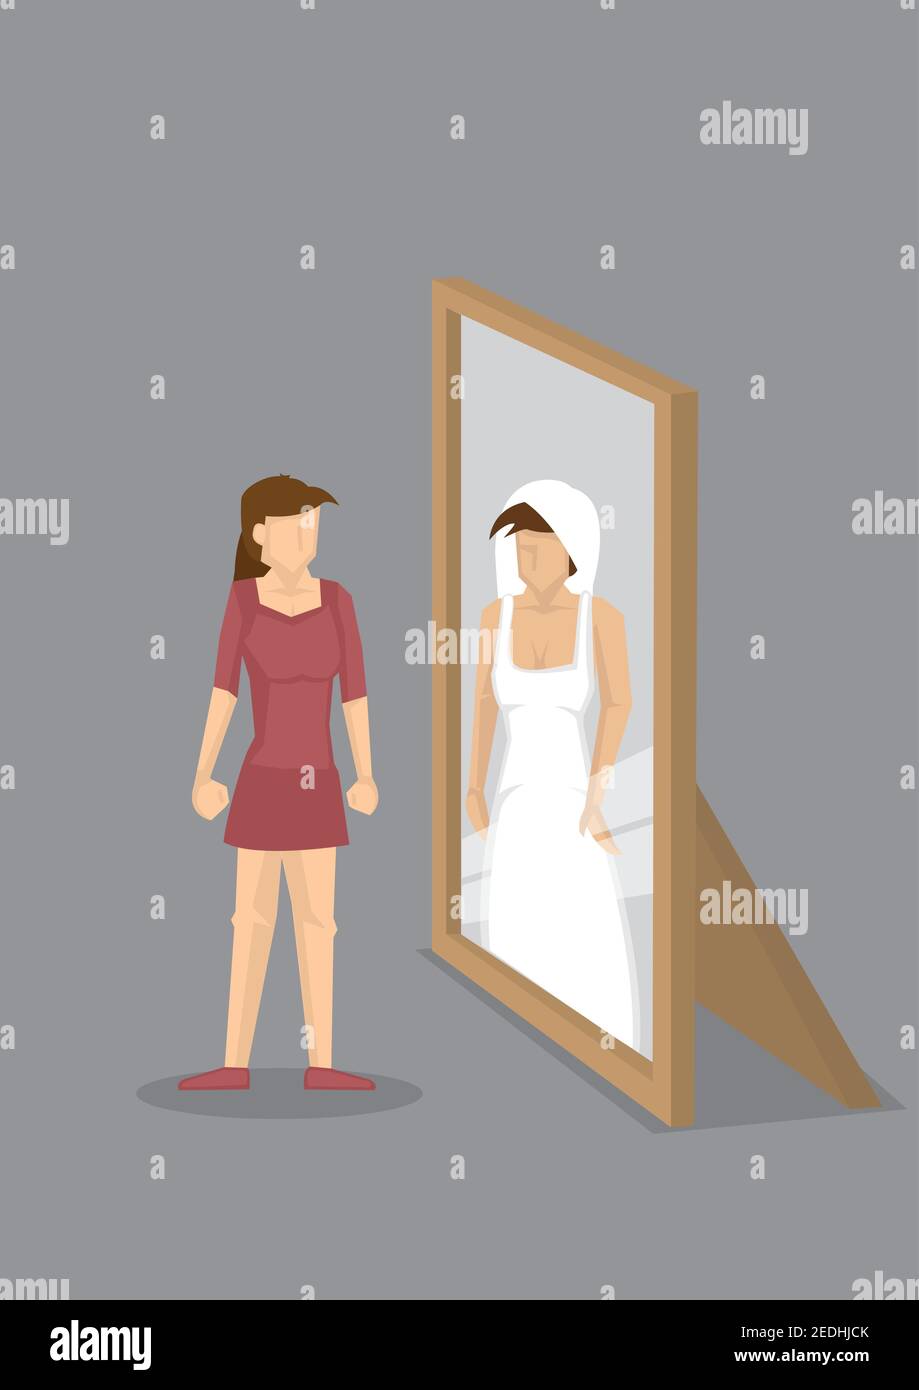 Cartoon Frau sieht sich als Braut im Hochzeitskleid in Spiegelreflexion. Vektor-Illustration auf Konzept für die Fantasie der Frau für Hochzeit. Stock Vektor